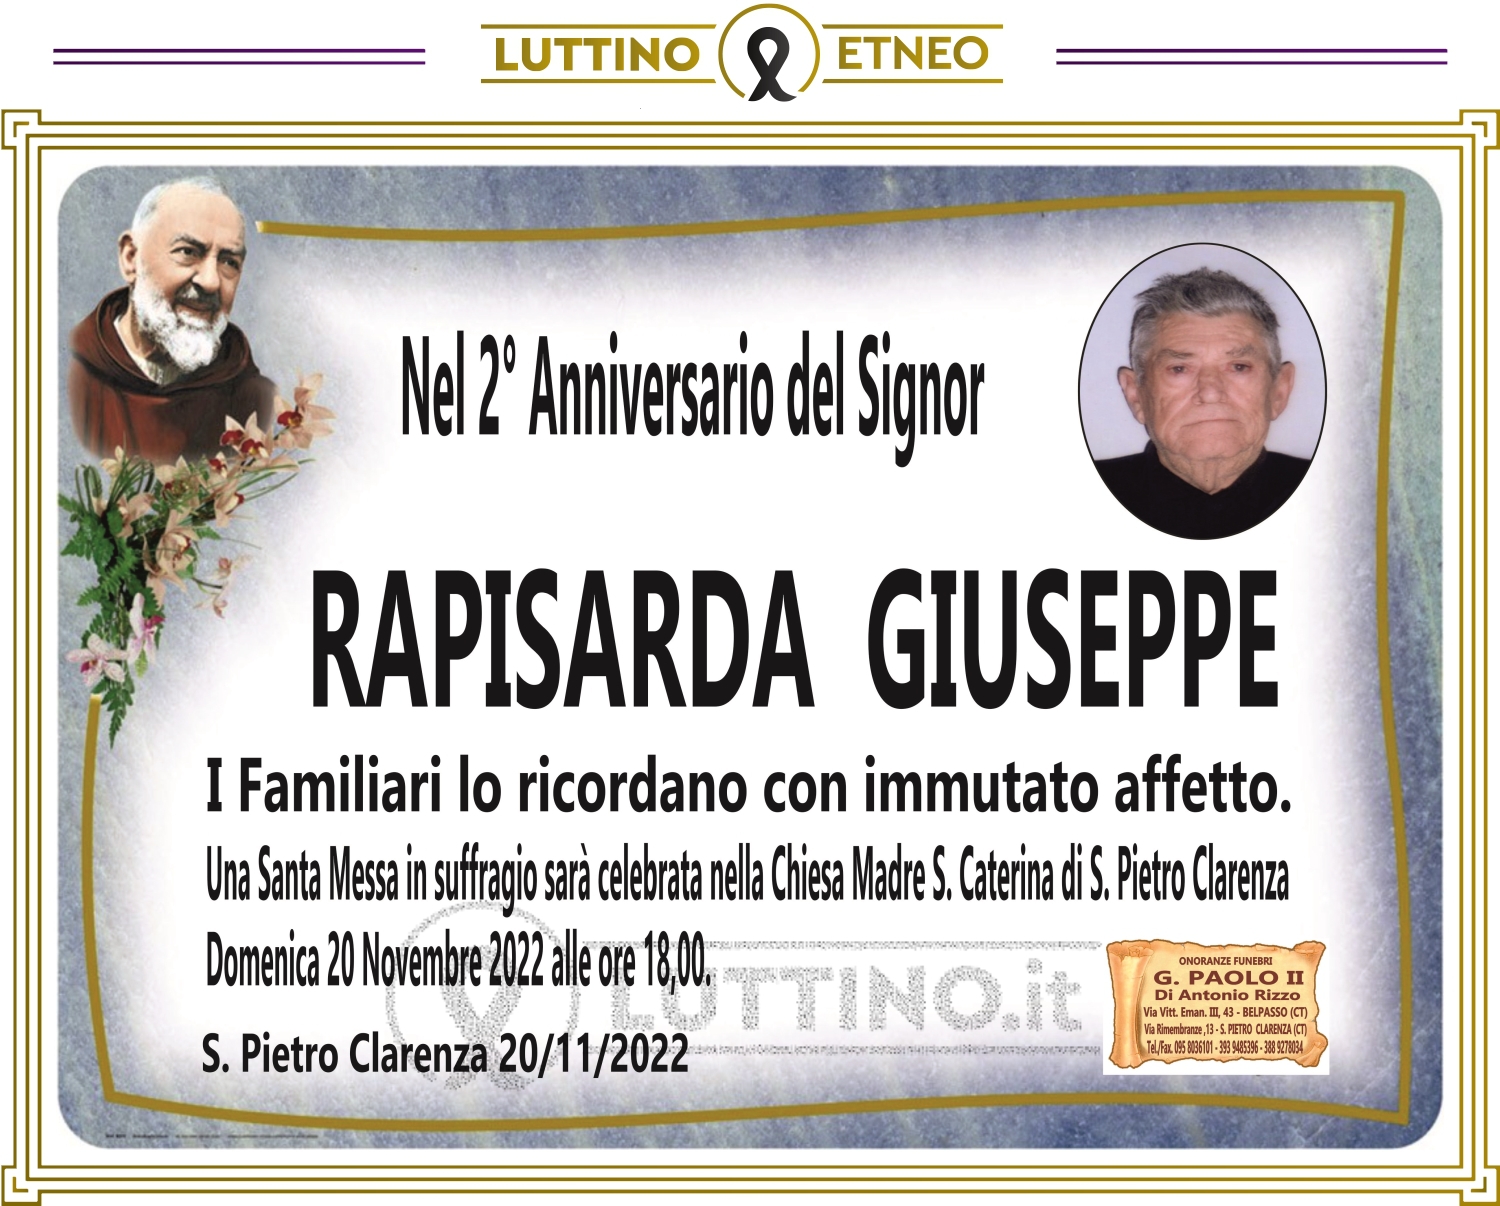 Giuseppe Rapisarda